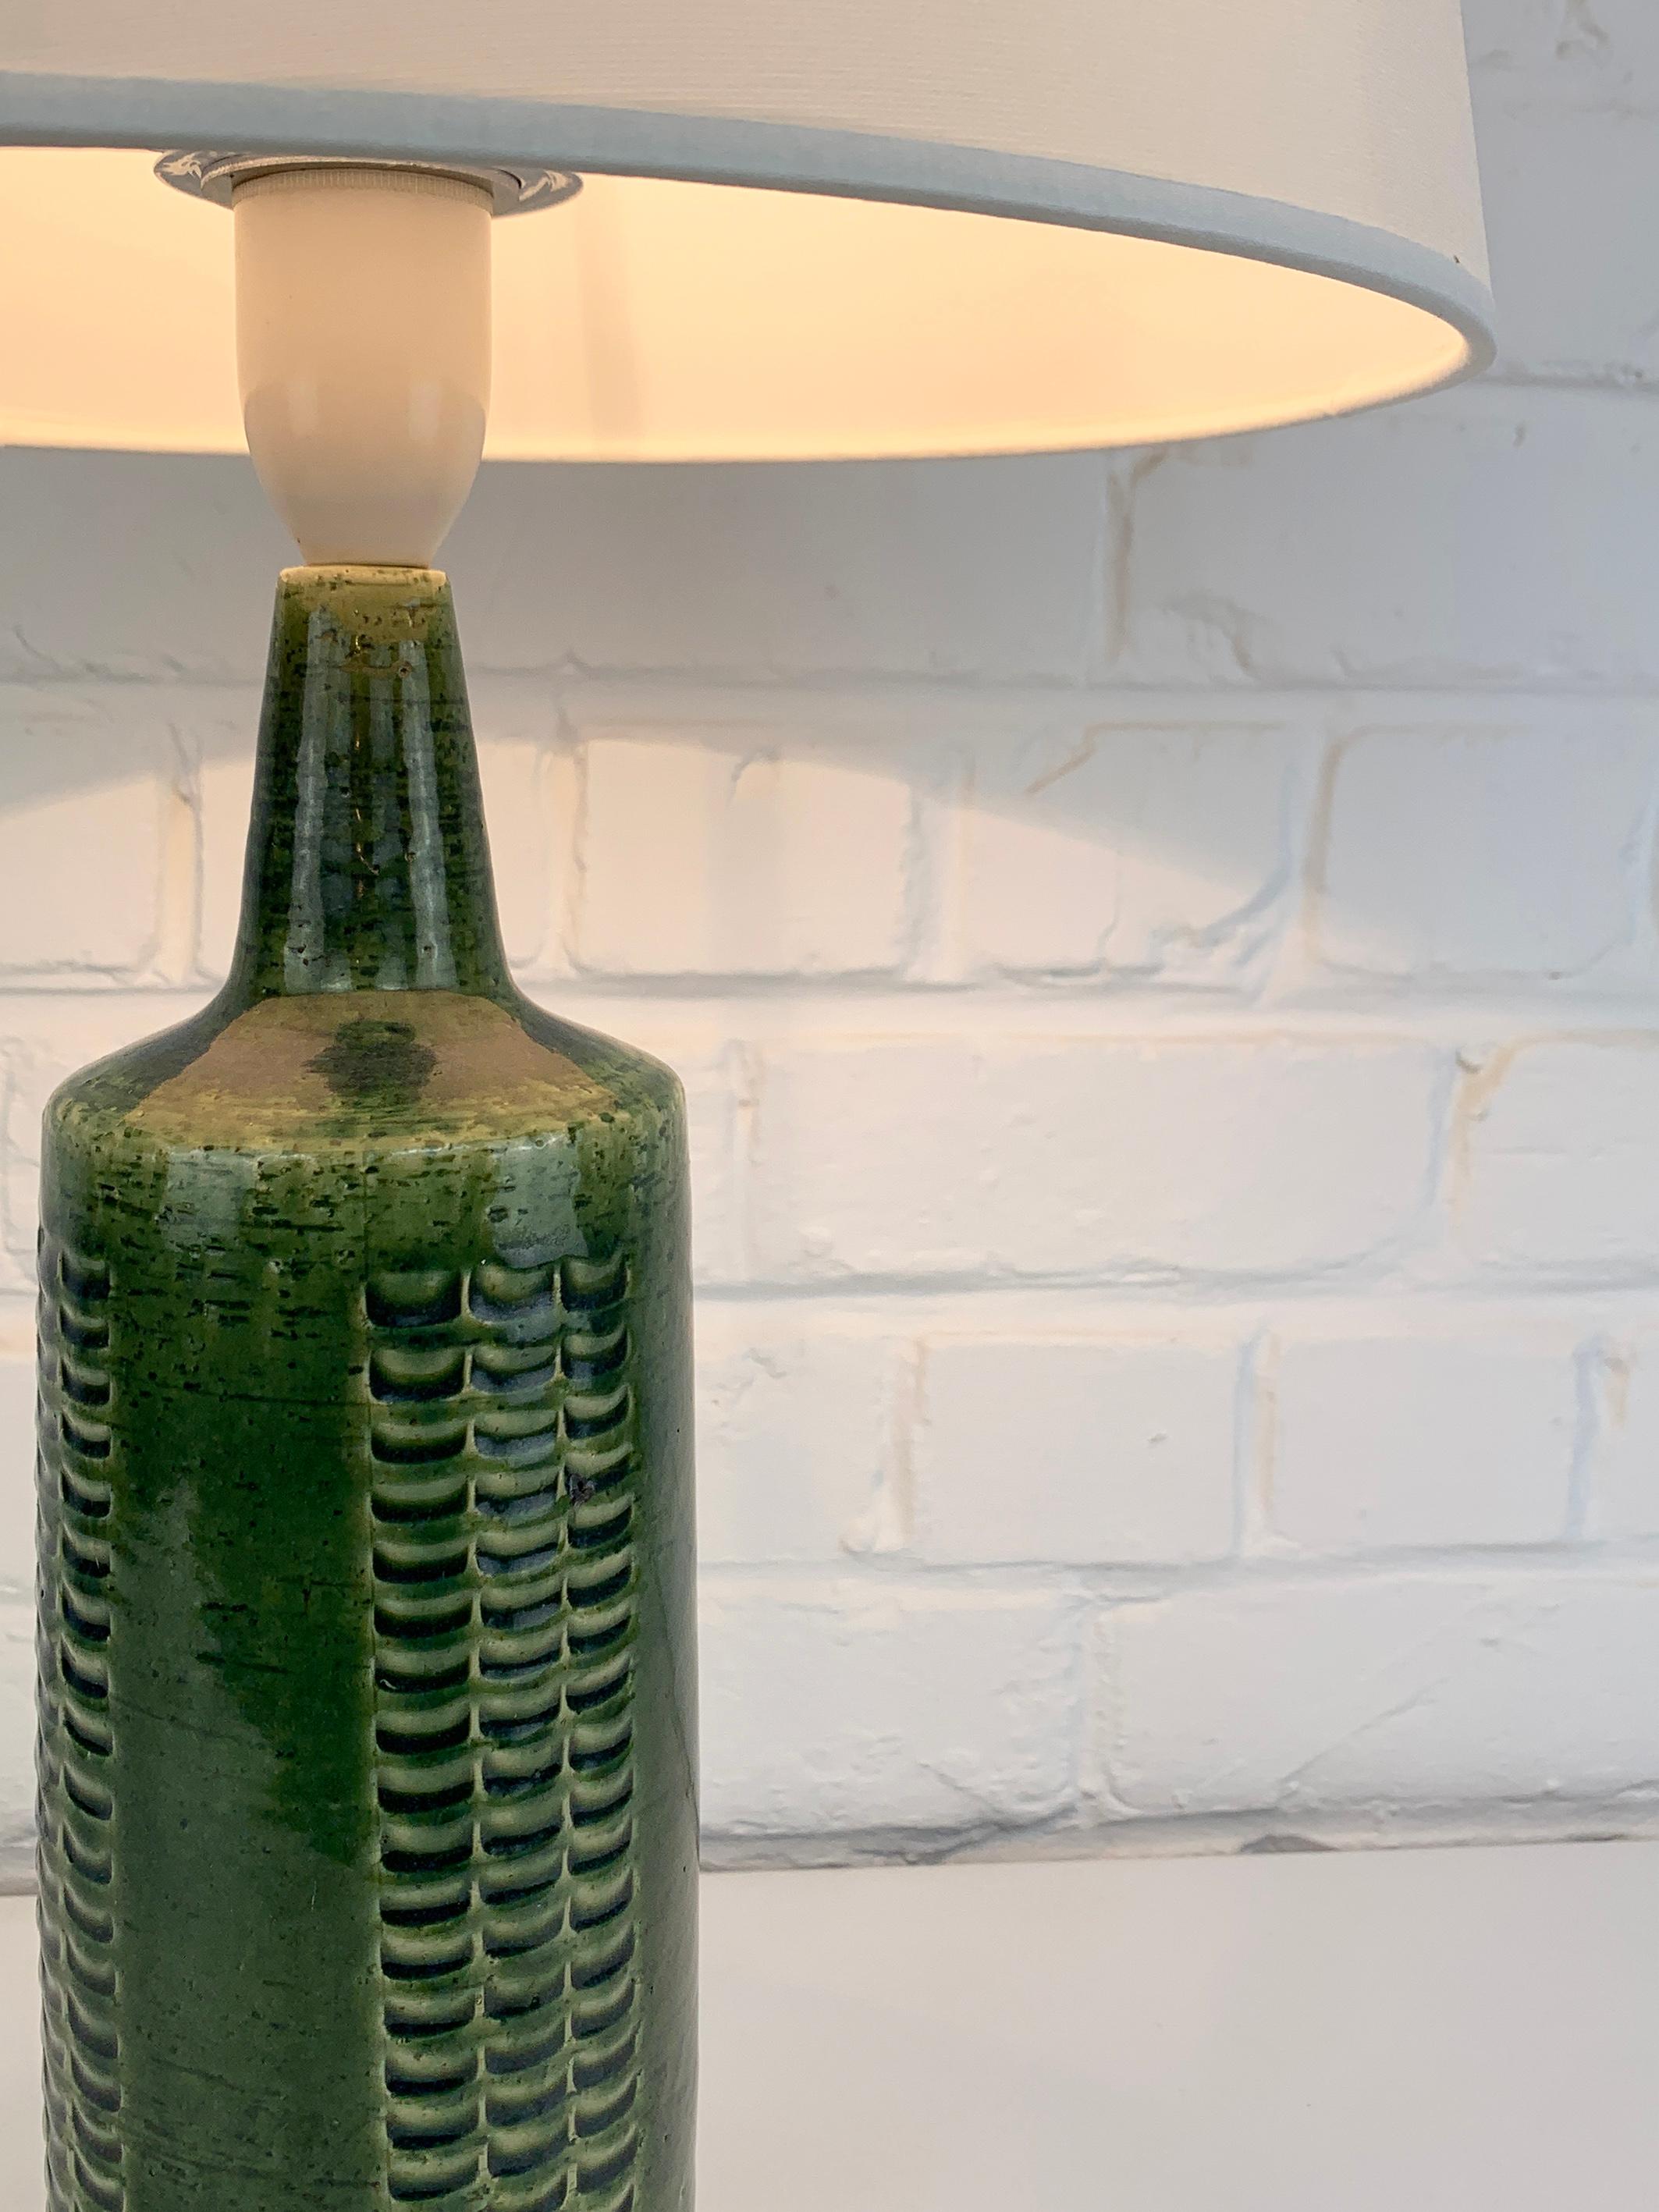 Cette lampe a été produite par Palshus (Danemark), fondée par Per et sa femme Annelise Linnemann-Schmidt. 

Le couple a créé et produit des objets en chamotte (argile danoise) avec des décorations imprimées (vaisselle, vases et lampes). Leur design